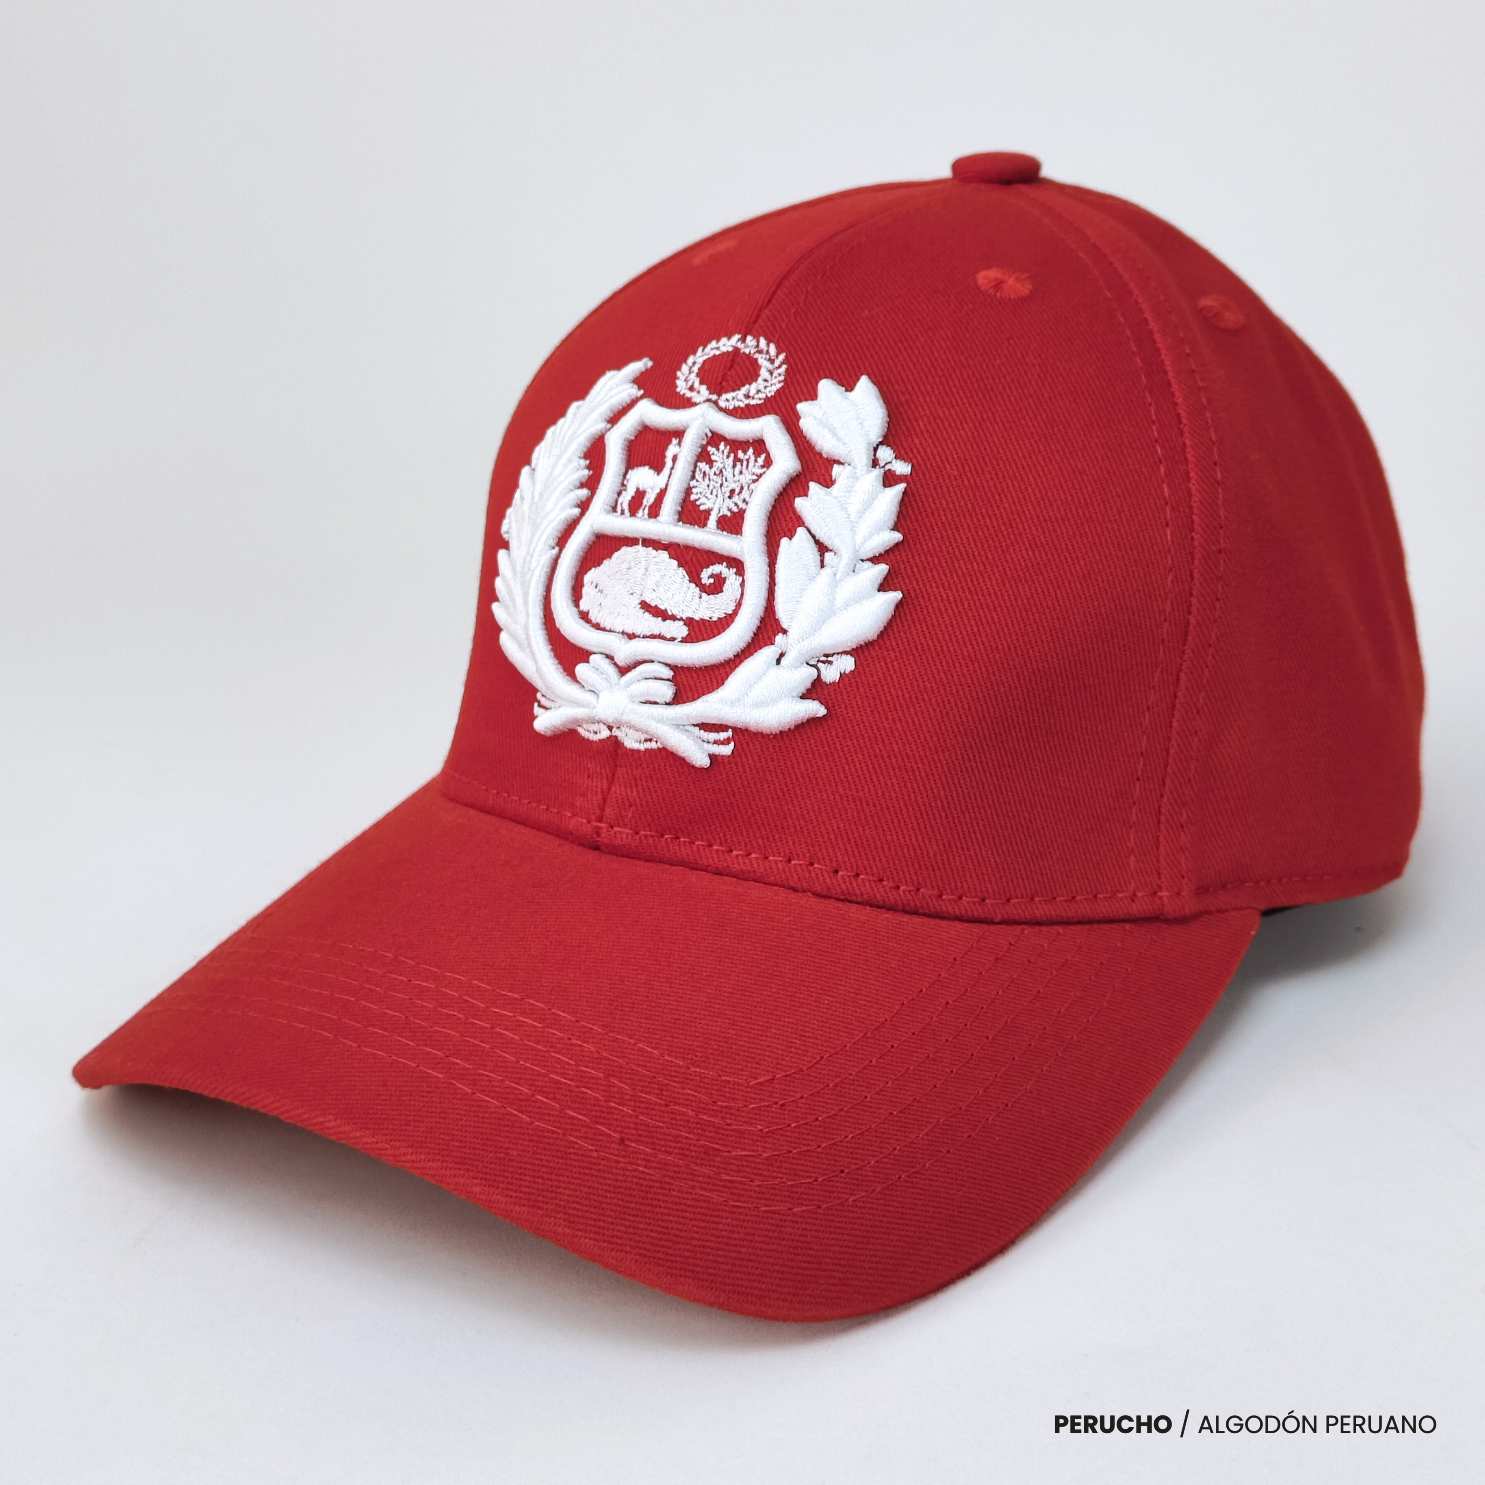 Gorra roja con escudo del Perú bordado en blanco - Perucho, polos